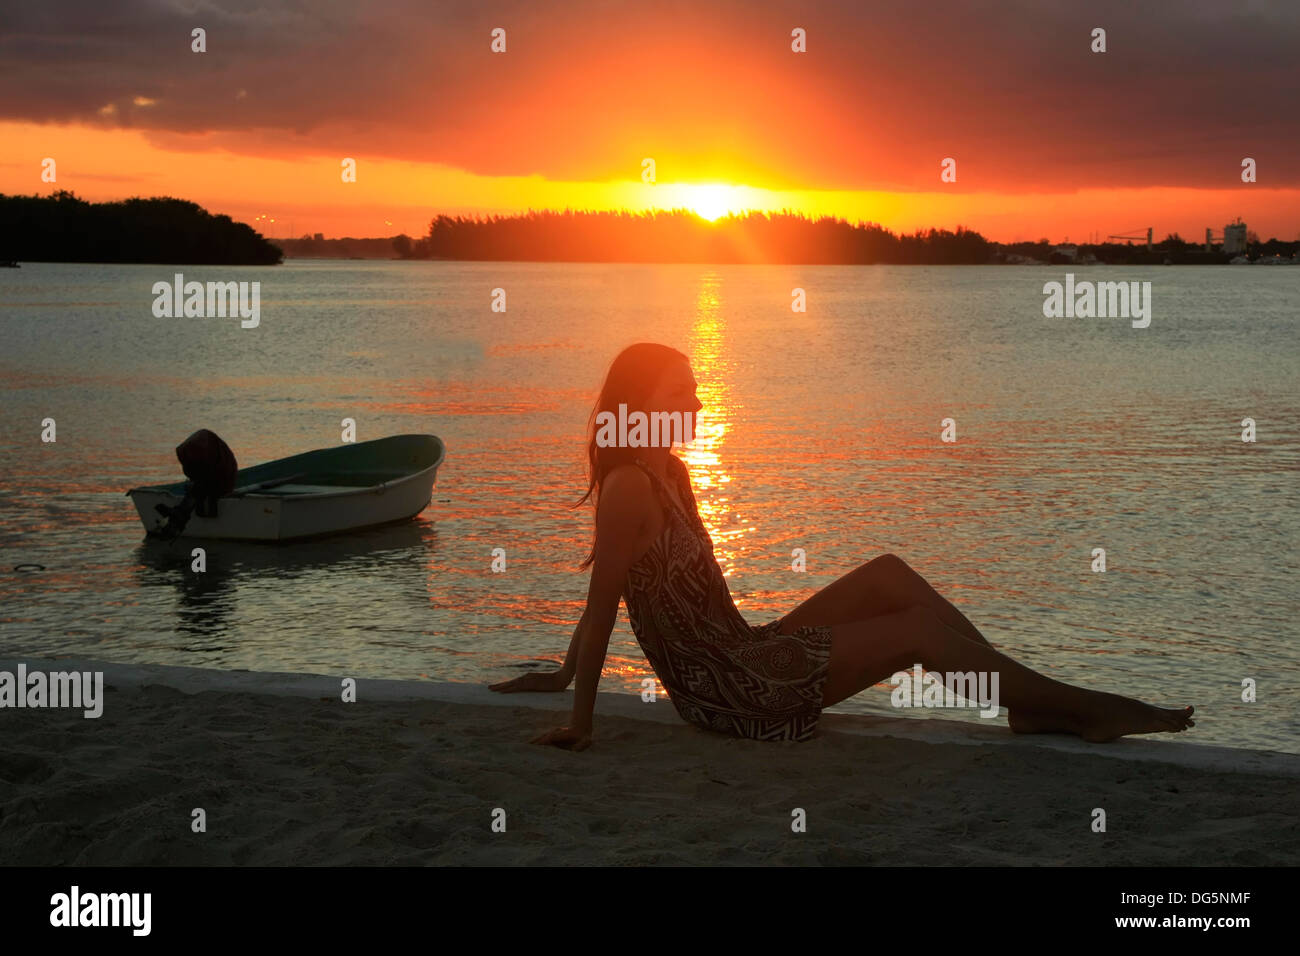 Silhouette de jeune femme au coucher du soleil, la baie de Boca Chica, République Dominicaine Banque D'Images